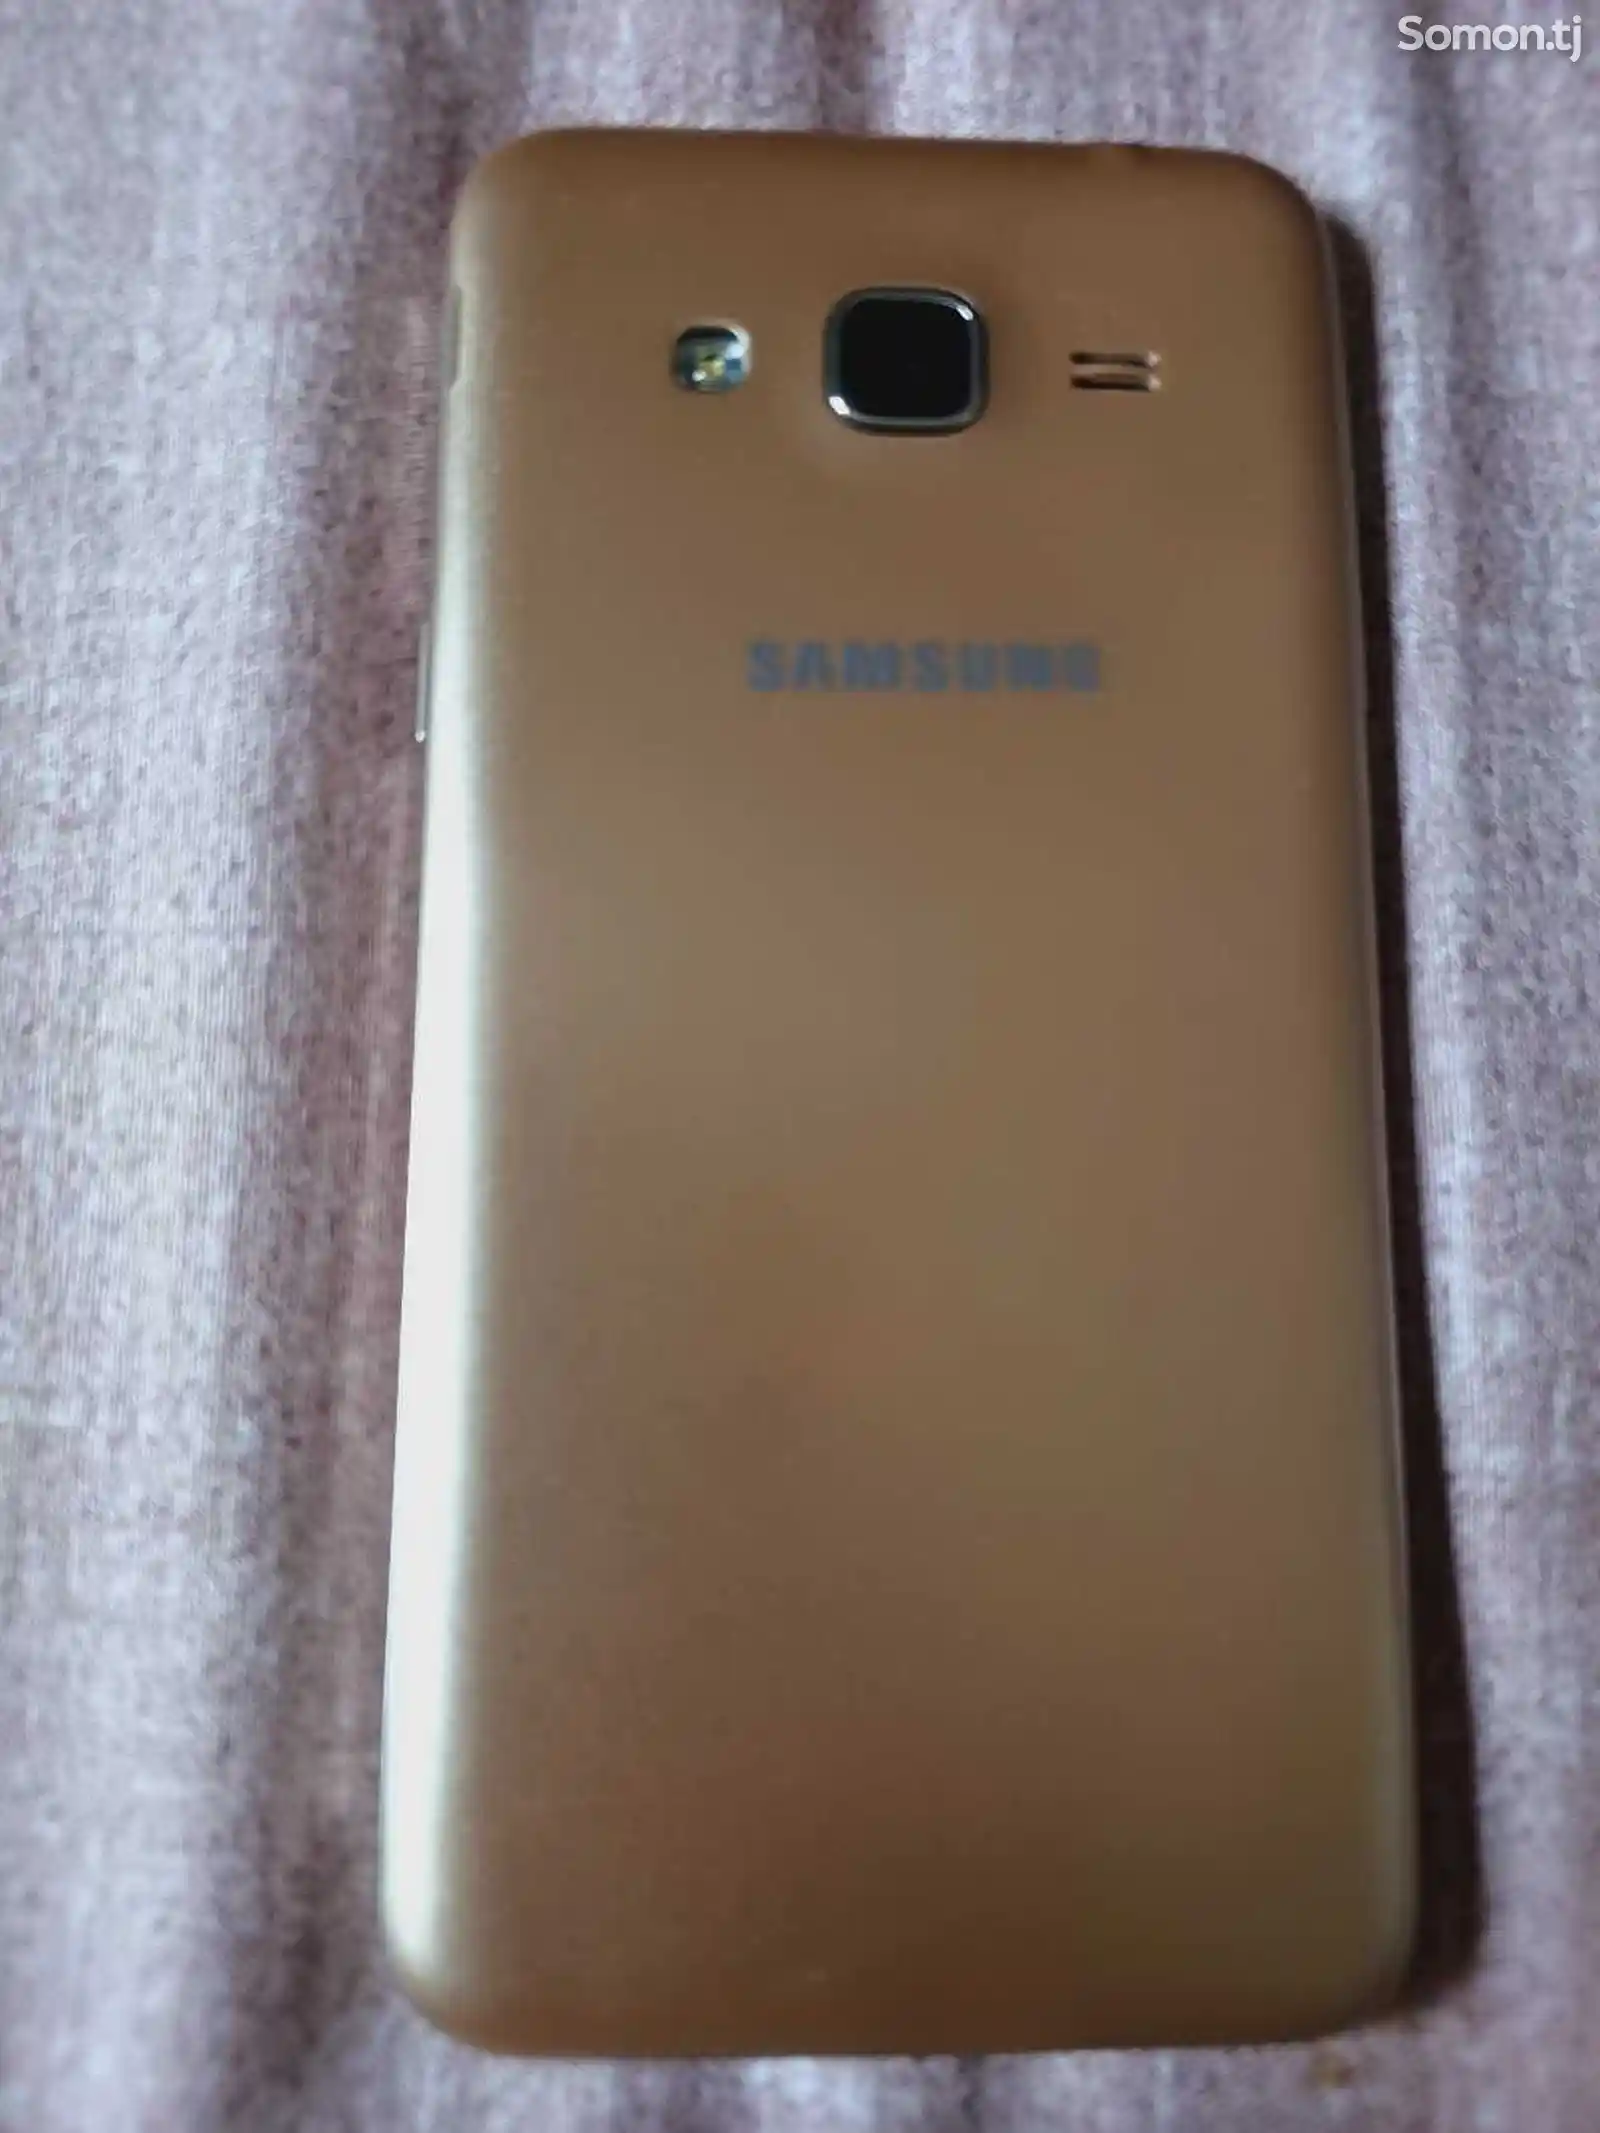 Samsung Galaxy j3 Duos 8gb-2